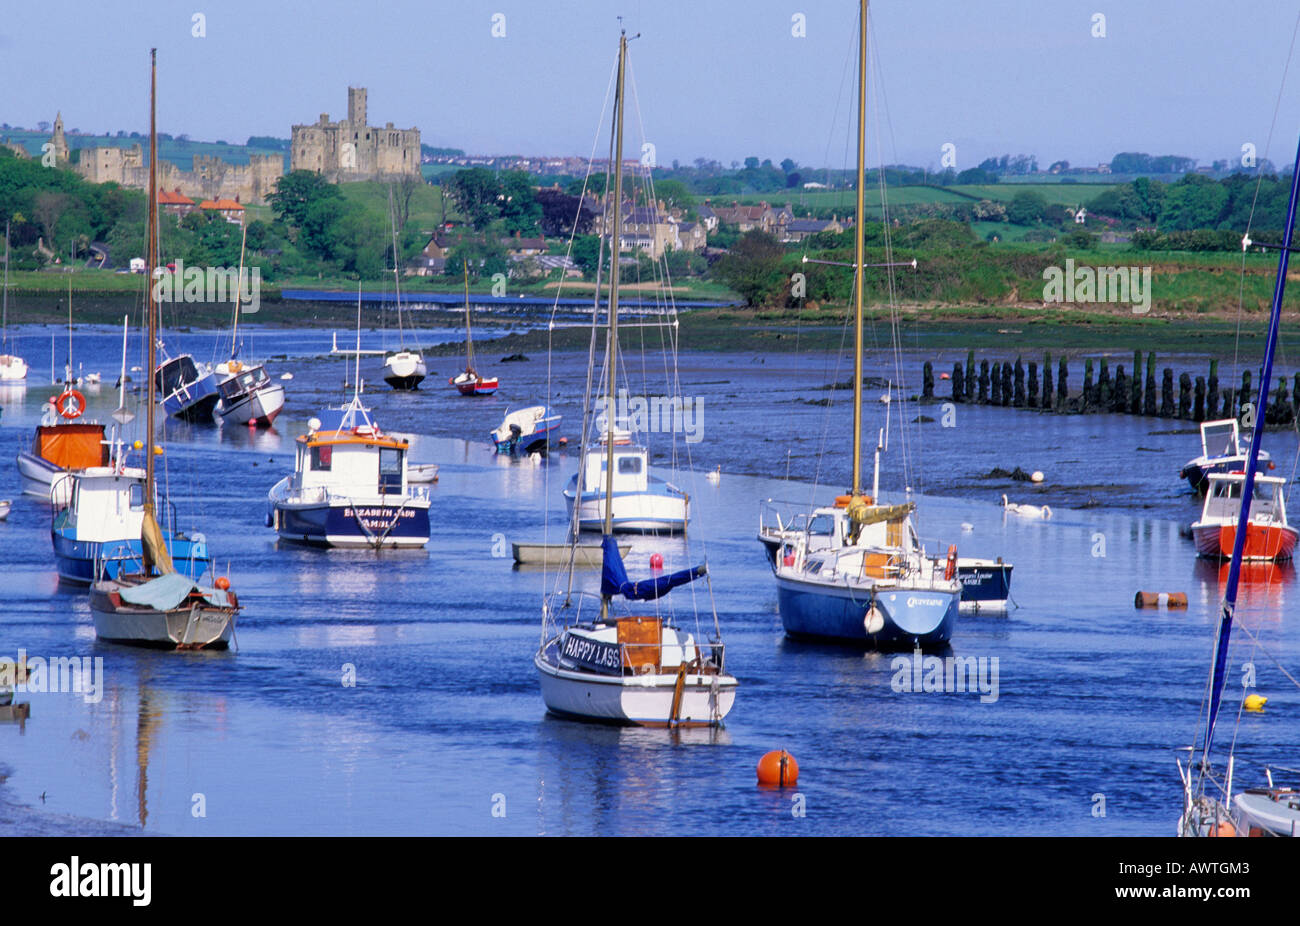 Warkworth e fiume Coquet, Northumberland, Inghilterra, Regno Unito, barche, castello, viaggi, turismo, paesaggio, paesaggio, costa, costiere Foto Stock